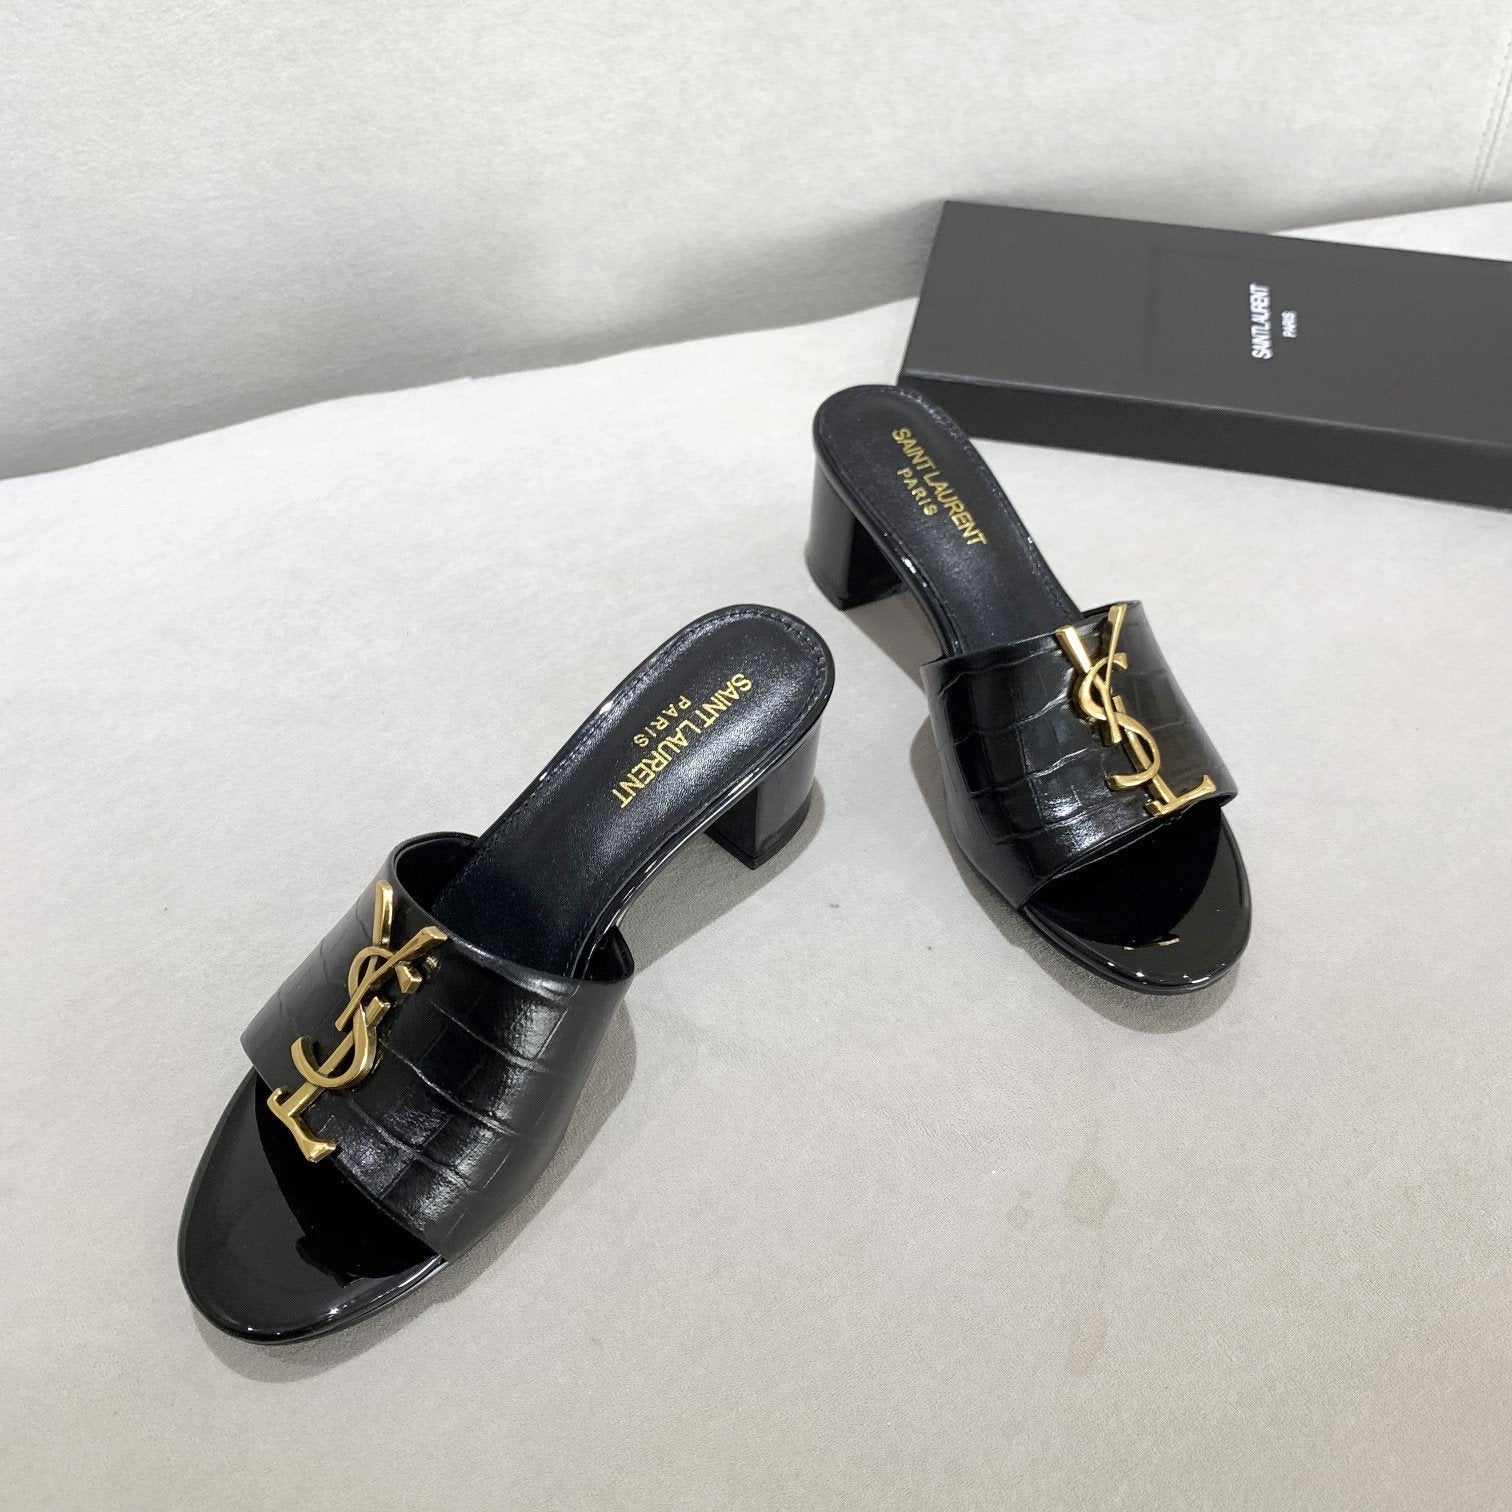 YSL Women's Popular Summer Flats Slipper Sandals Shoes 06054